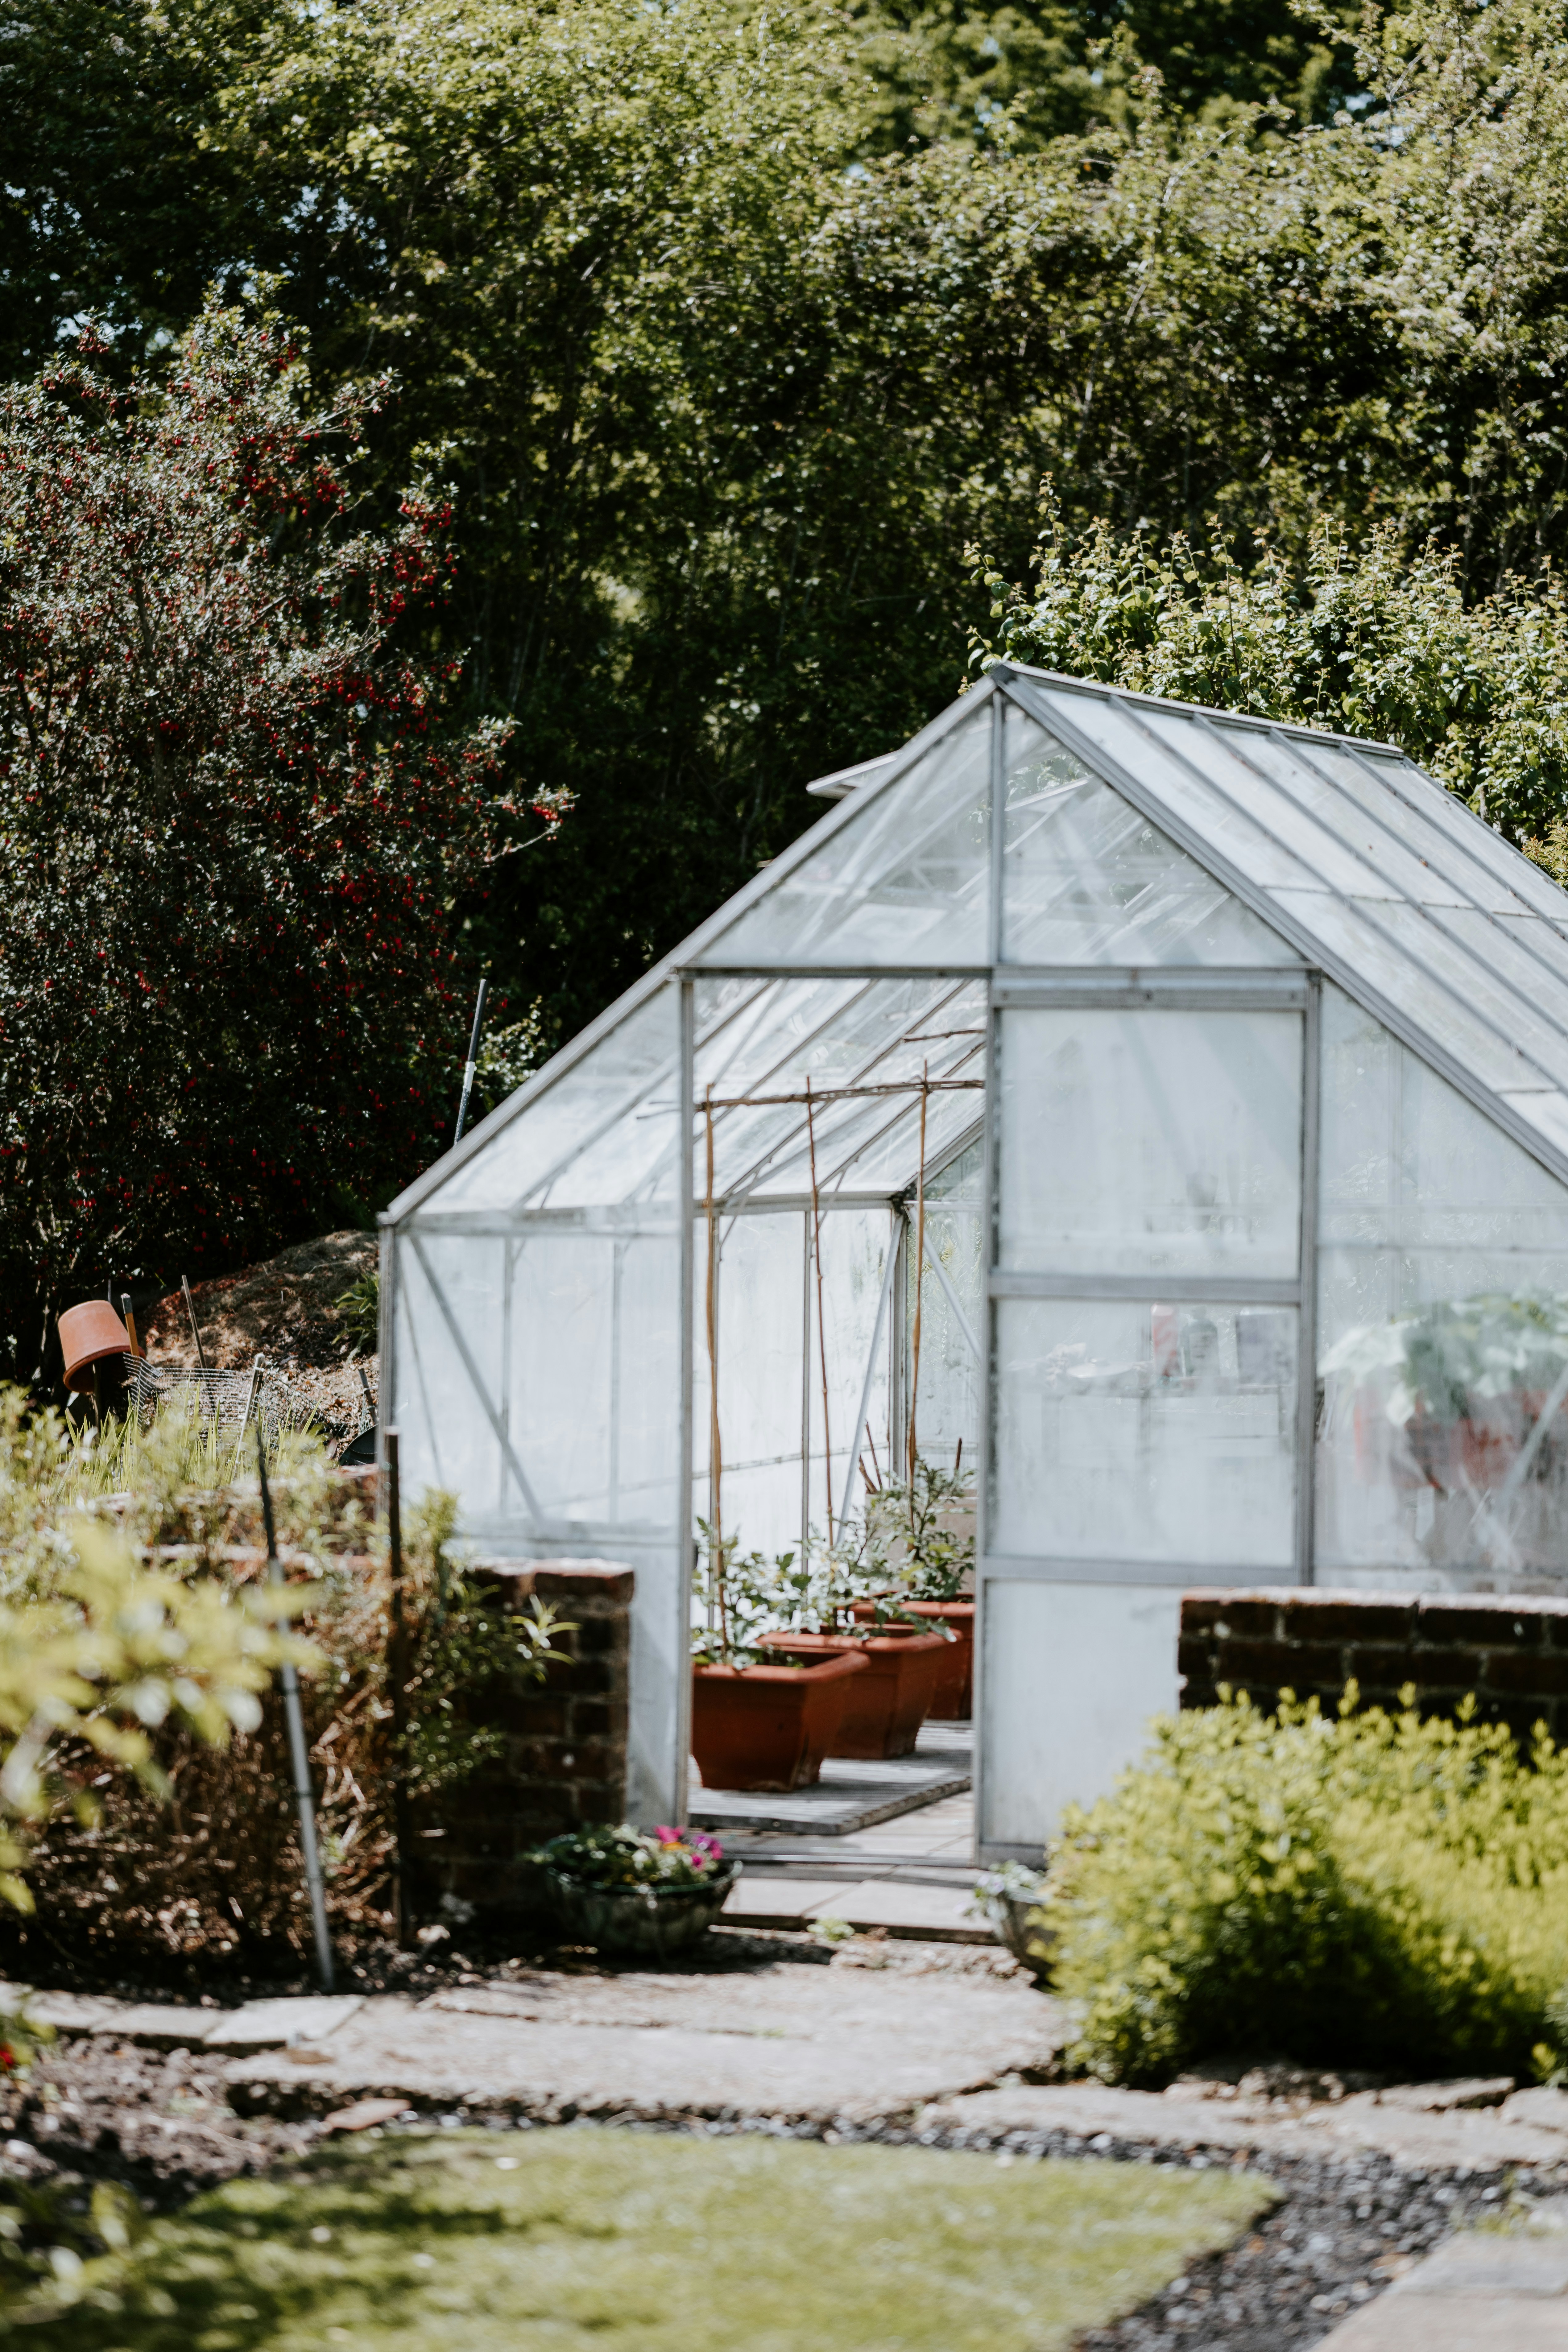 A Greenhouse